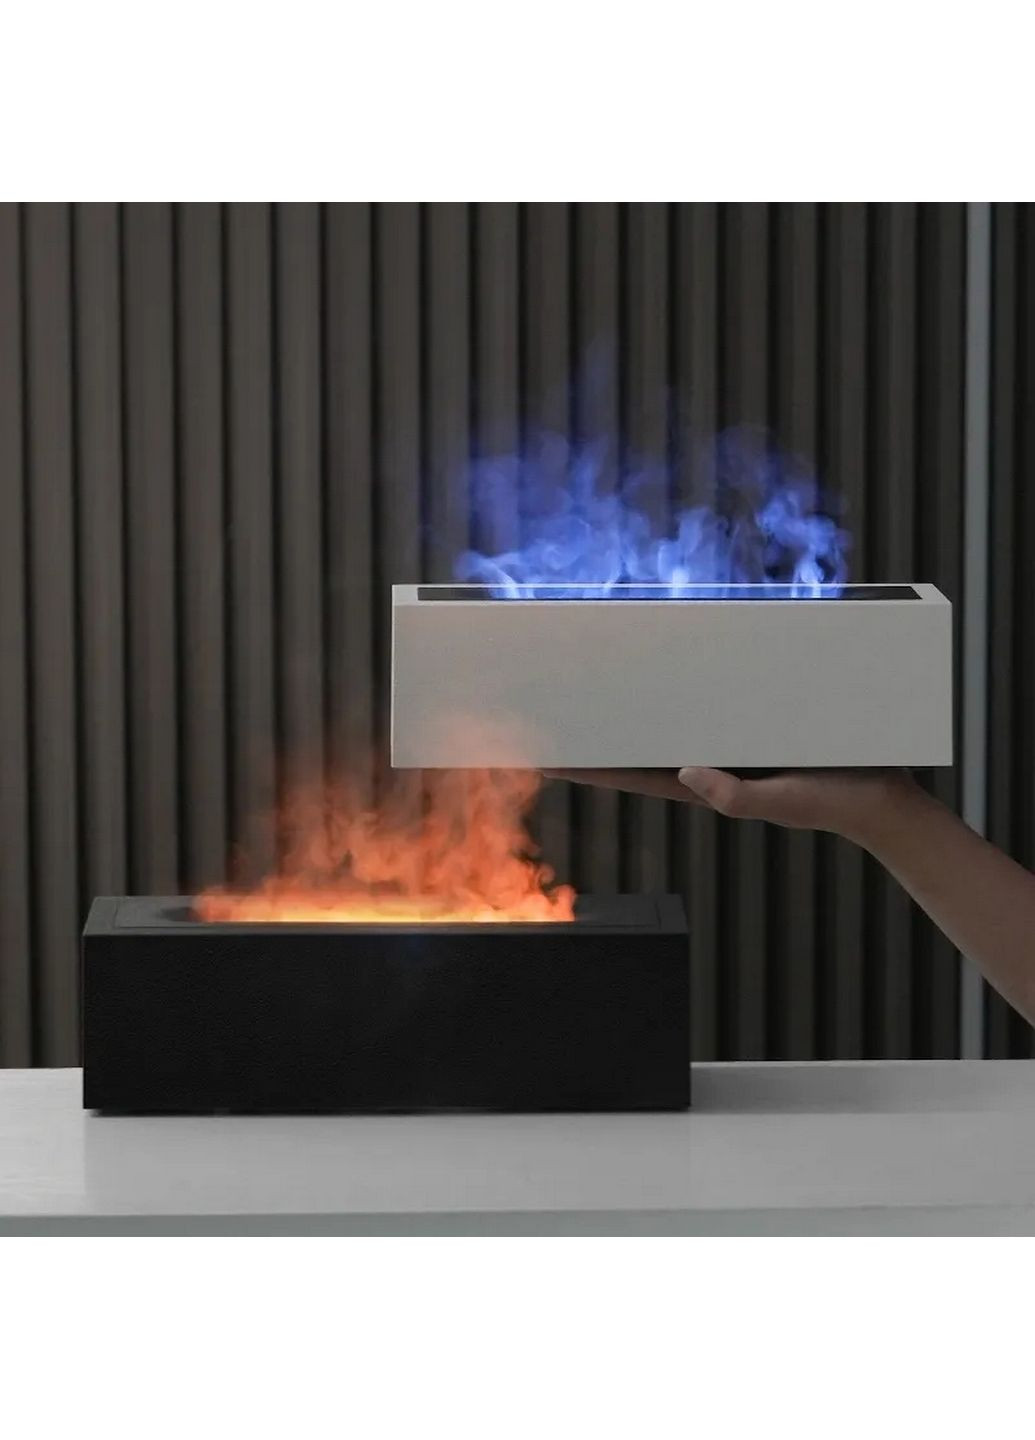 Увлажнитель воздуха портативный H3 Nordic Style Flame аромадифузор электрический, эффект пламени, ПОДАРОК + 2 Арома масла Kinscoter (293420492)